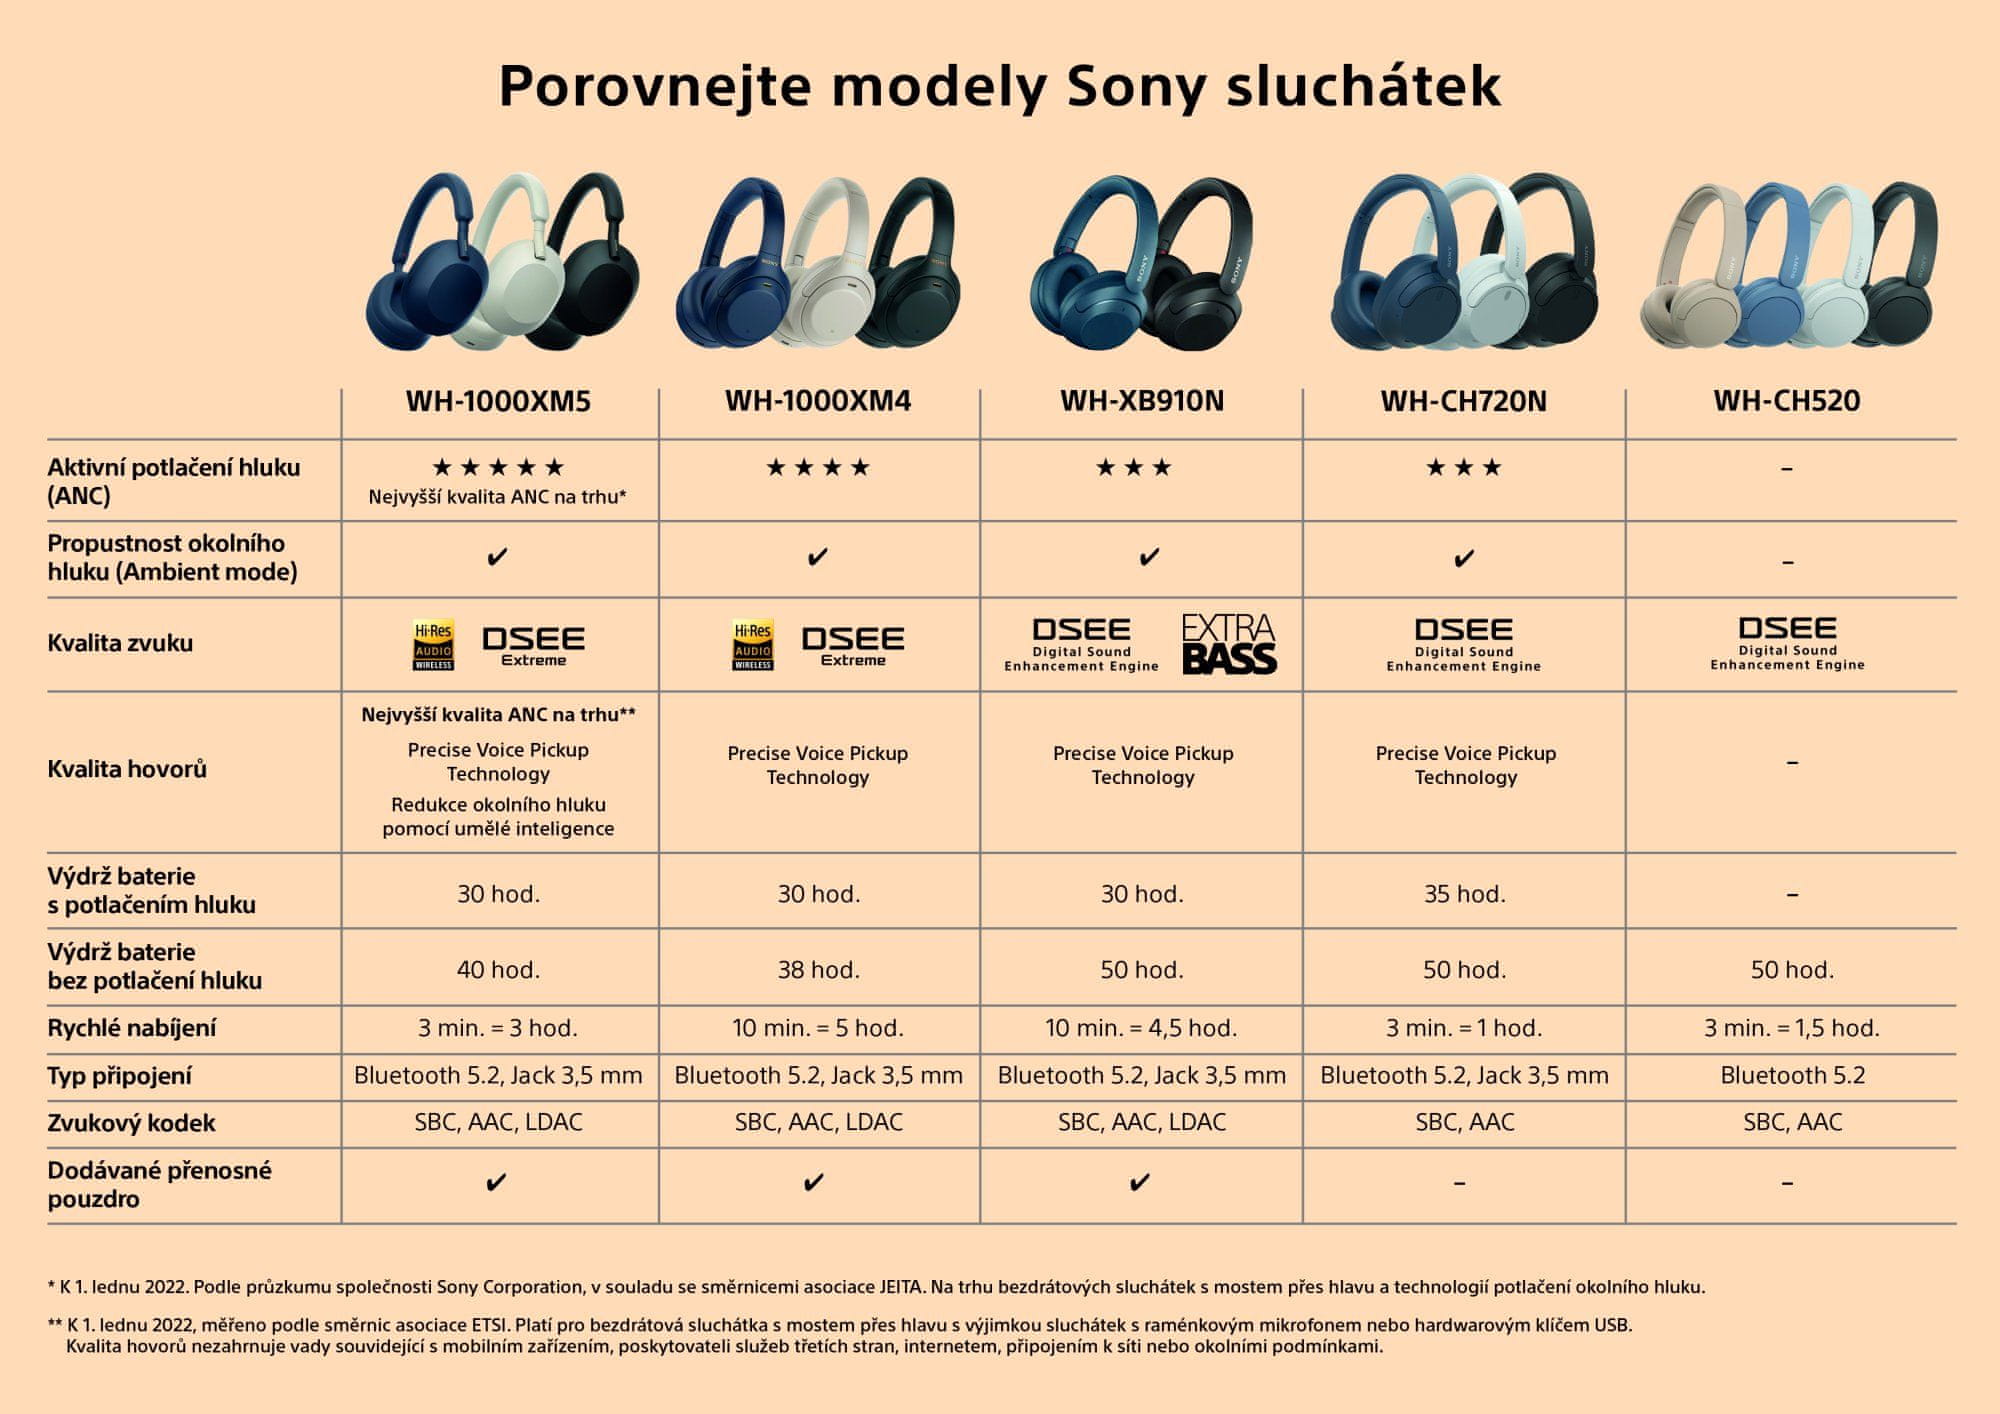 Sluchatka_srovnavaci_tabulka sluchátek Sony